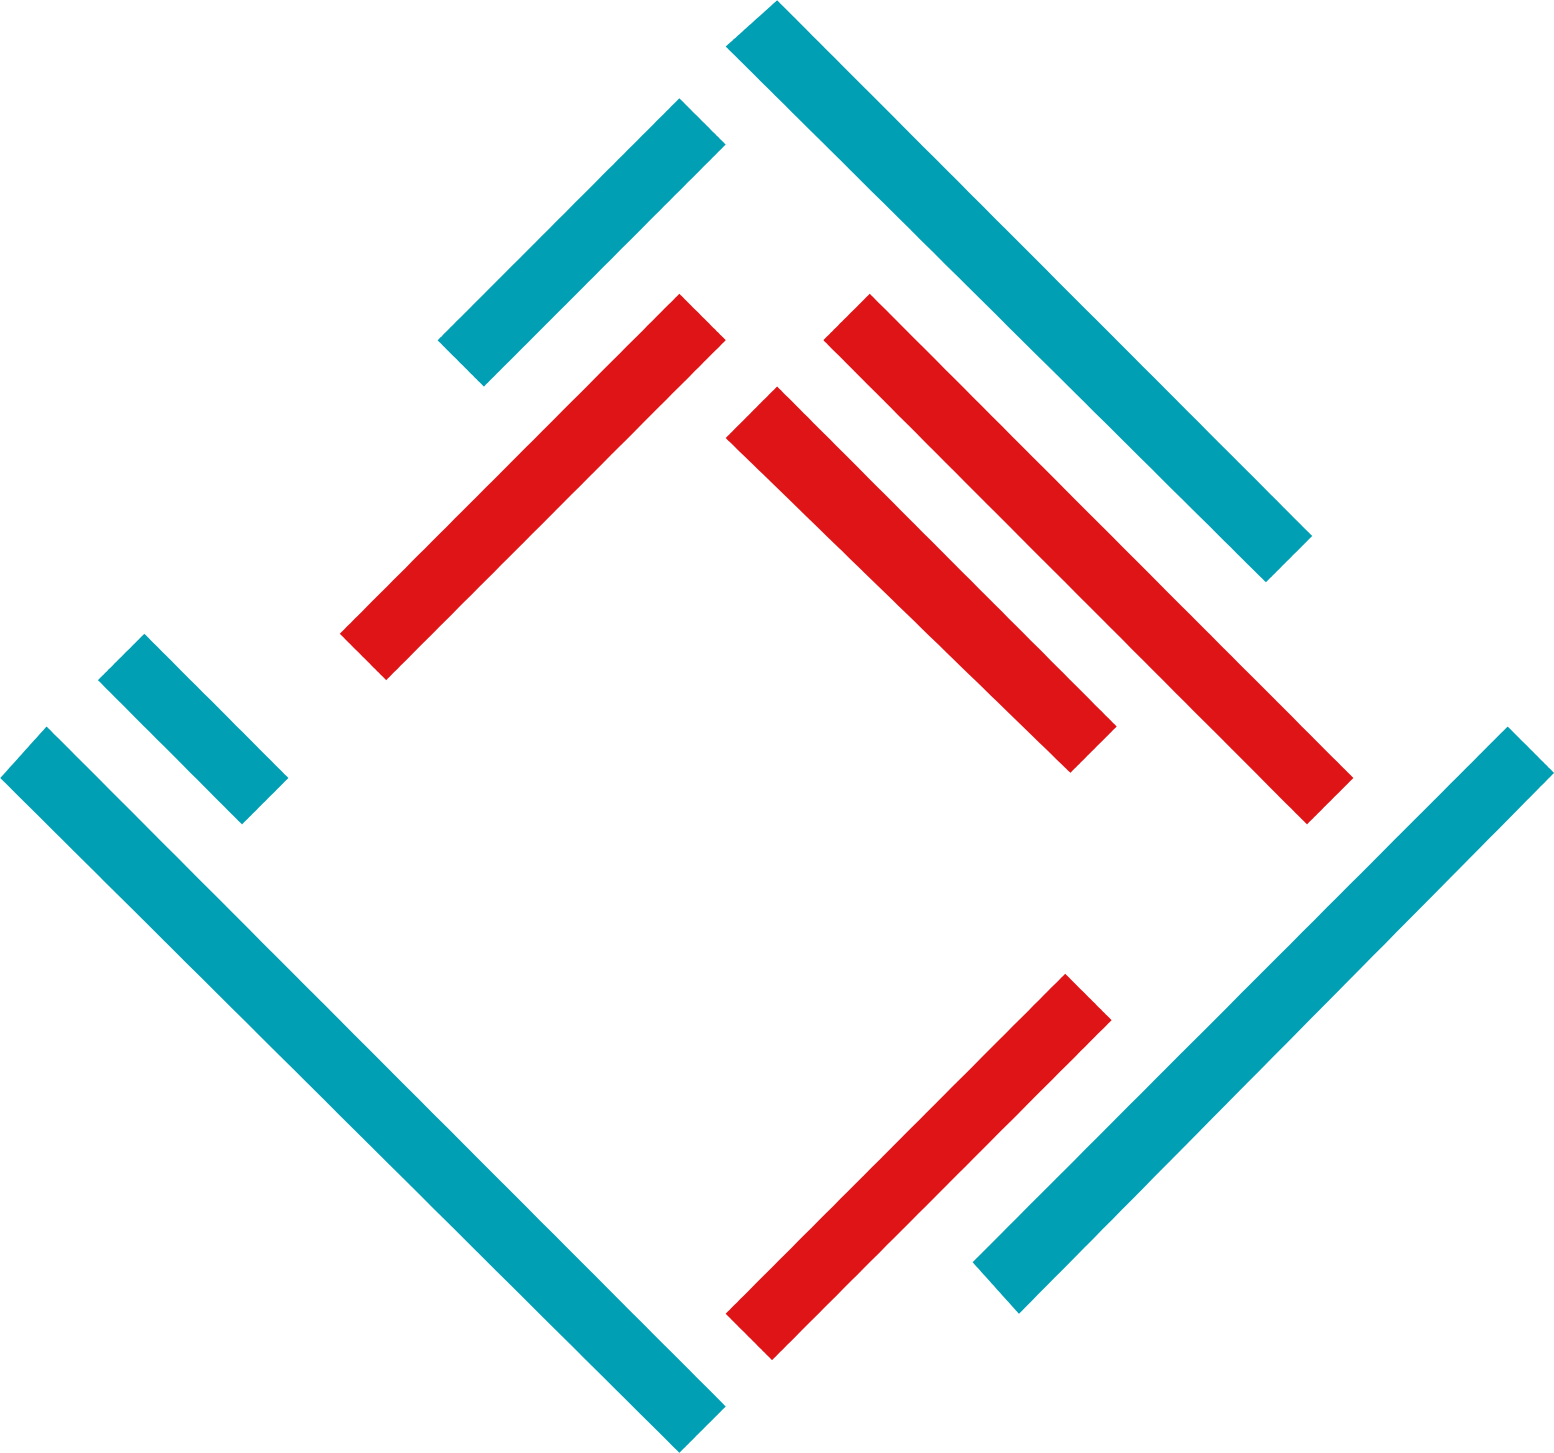 Dätwyler logo (transparent PNG)